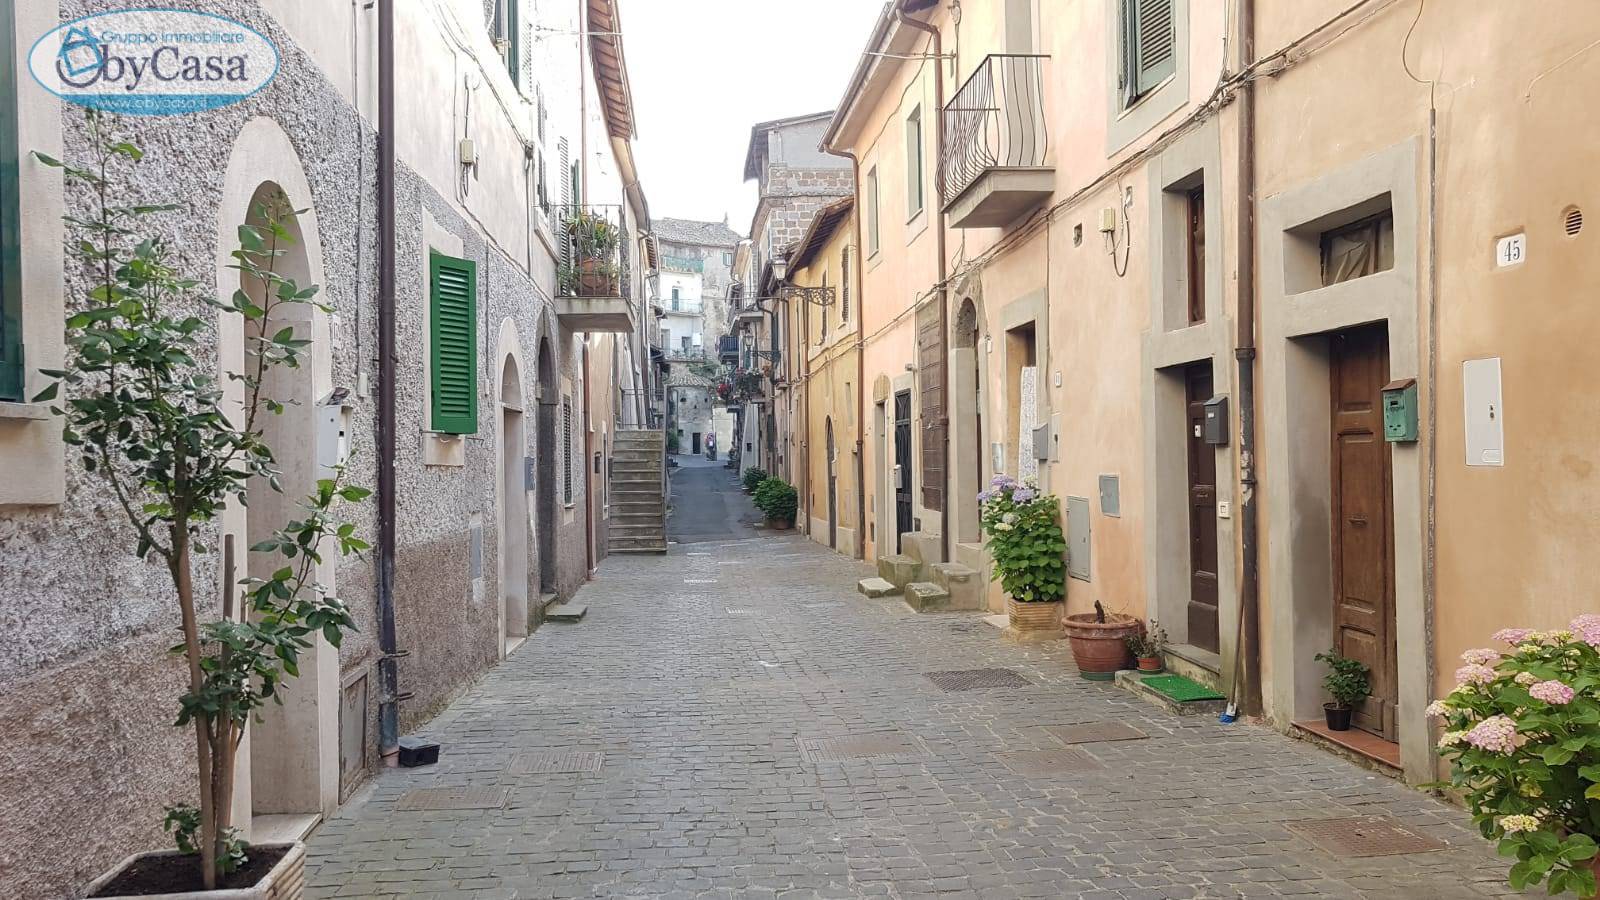 Appartamento in vendita a Bassano Romano, 2 locali, prezzo € 23.000 | CambioCasa.it